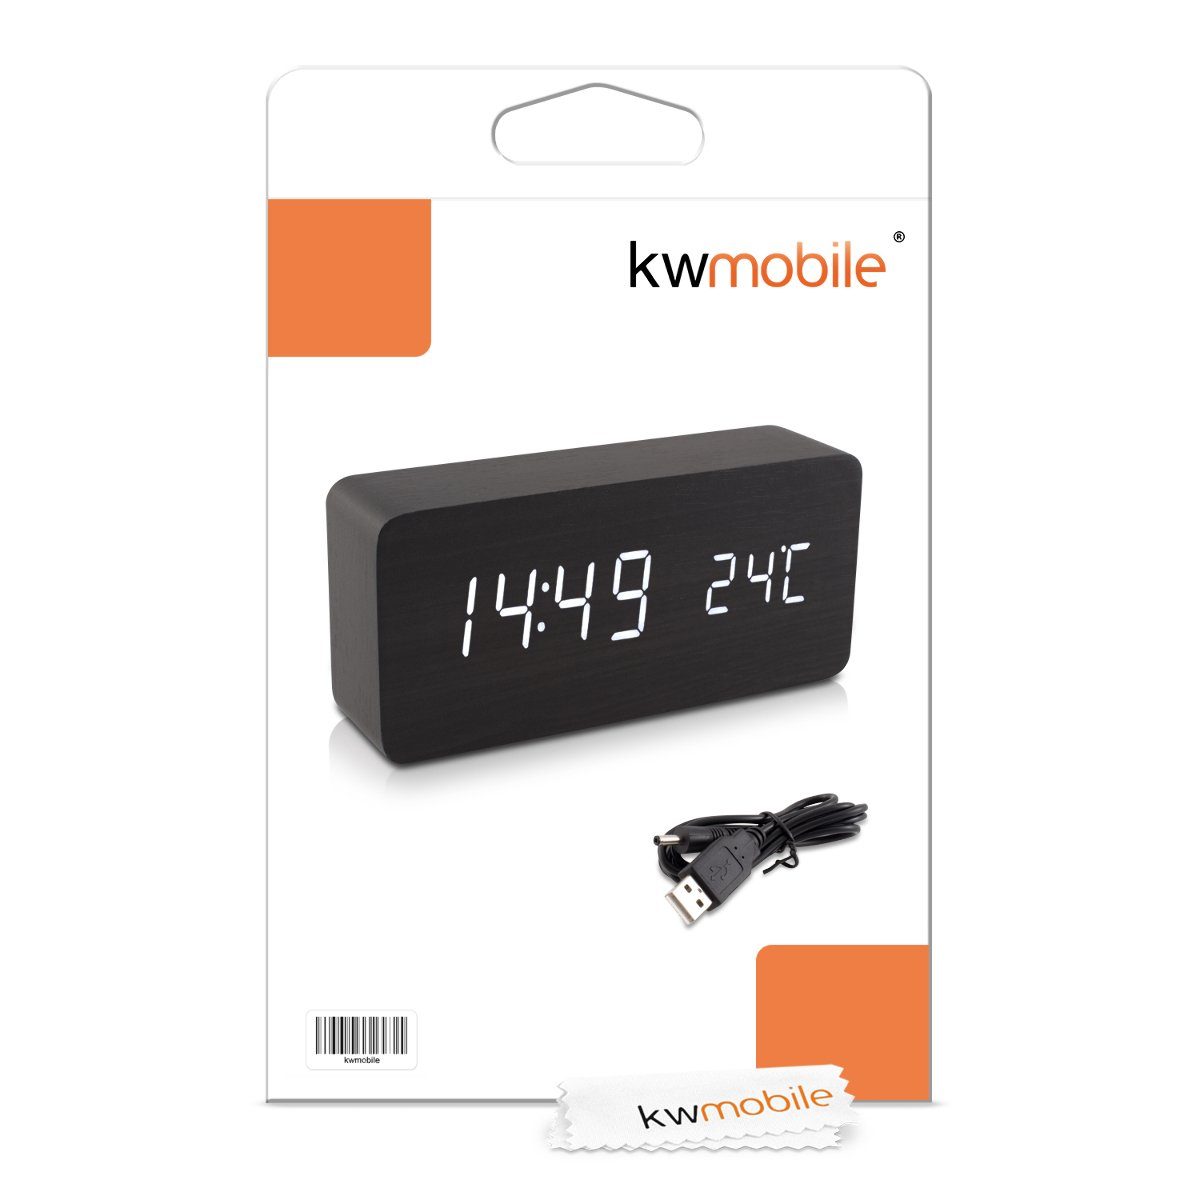 Uhrzeit, Holzoptik Temperatur - & Anzeige Datum Digitalwecker in Wecker kwmobile v.